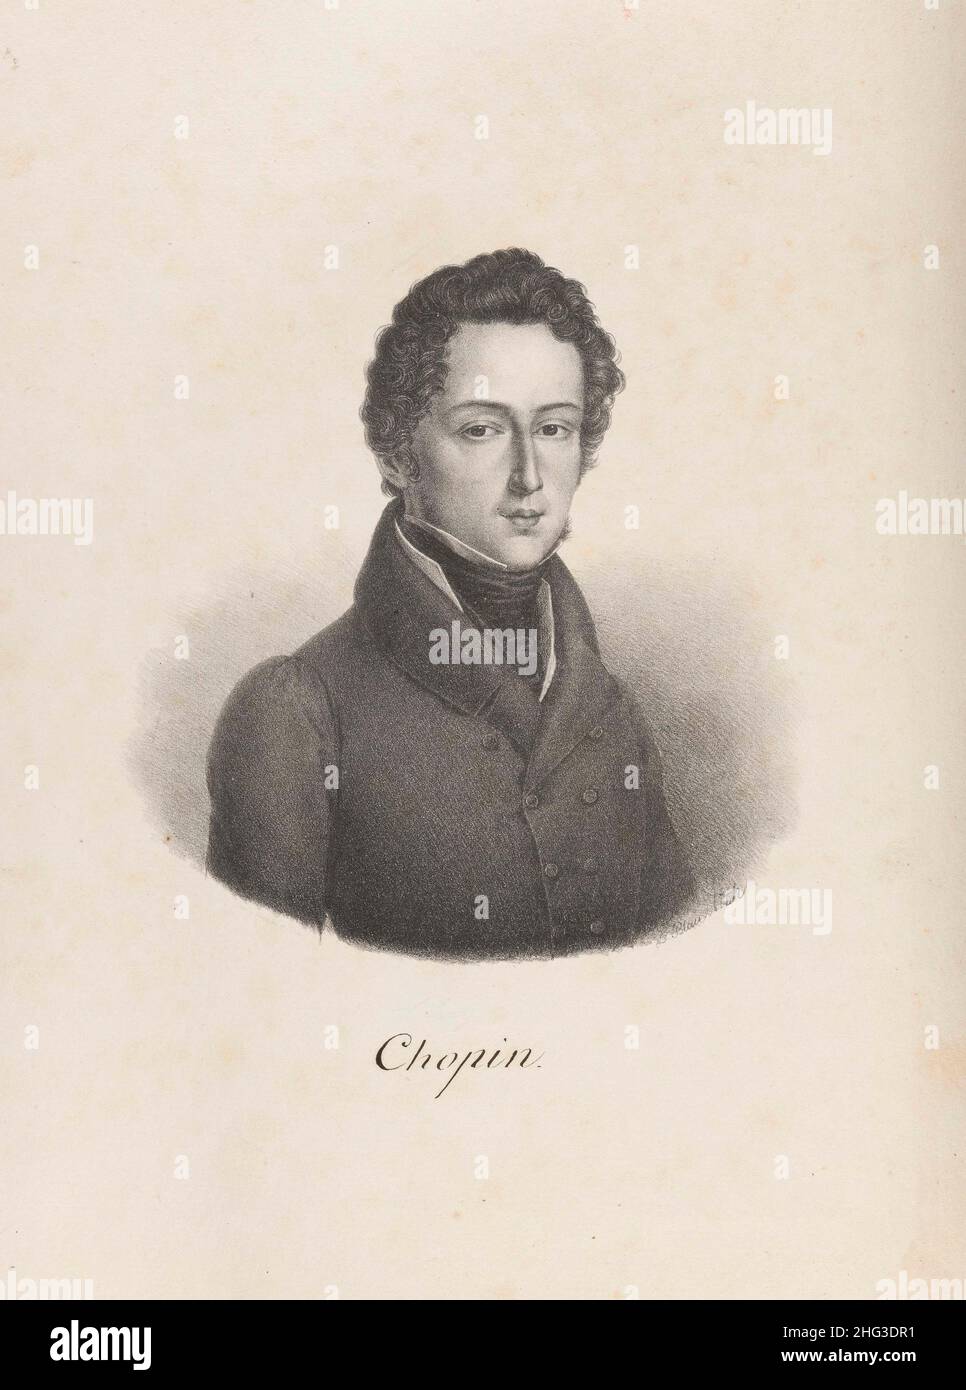 Porträt Frederic Chopins. 1847, von Godefroy Engelmann (1788-1839) – Grafiker. Frédéric François Chopin (1810–1849) war ein polnischer Komponist und Komponist Stockfoto